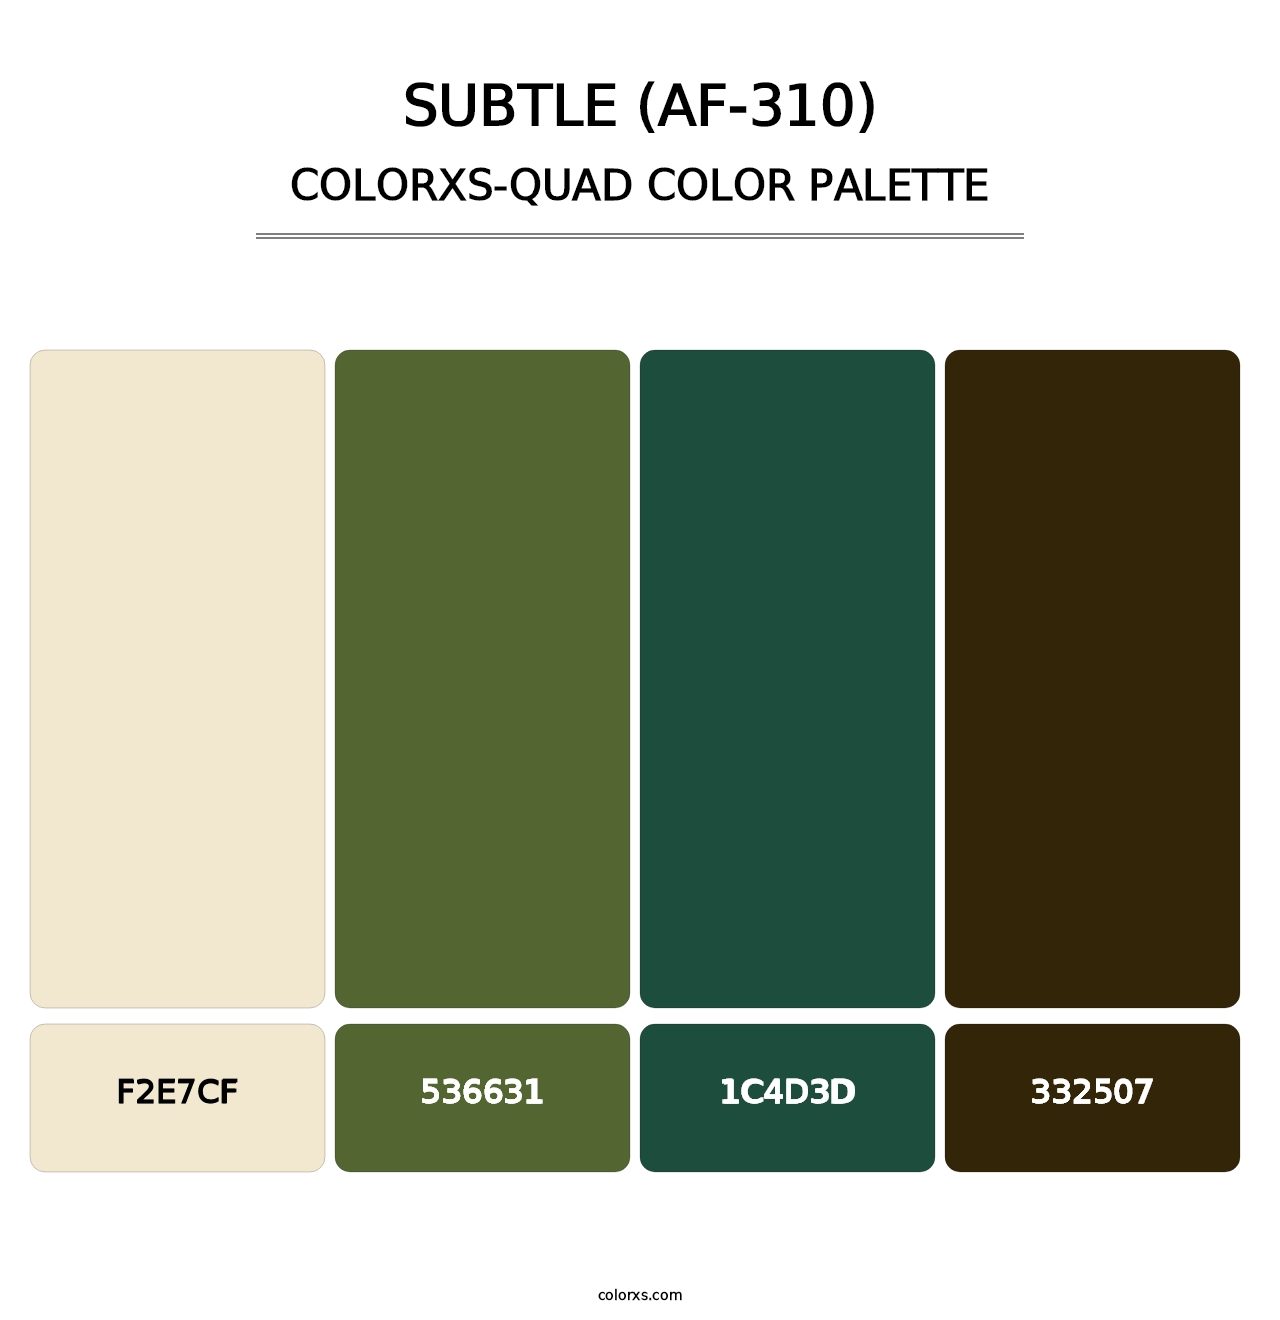 Subtle (AF-310) - Colorxs Quad Palette